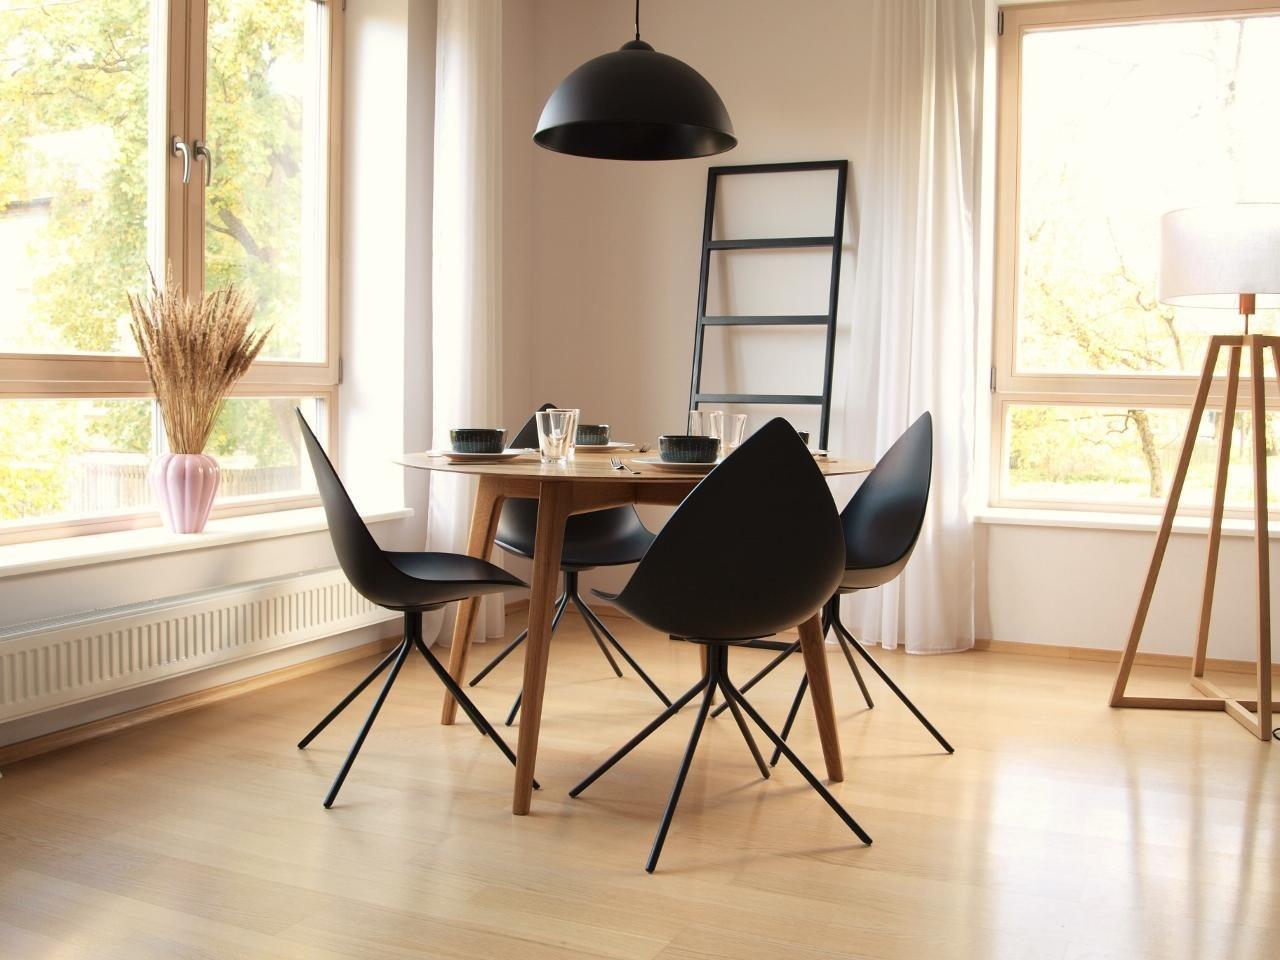 #Esszimmer #homestory #skandinavisch #minimalistisch mit schönem #Esstisch aus #Holz